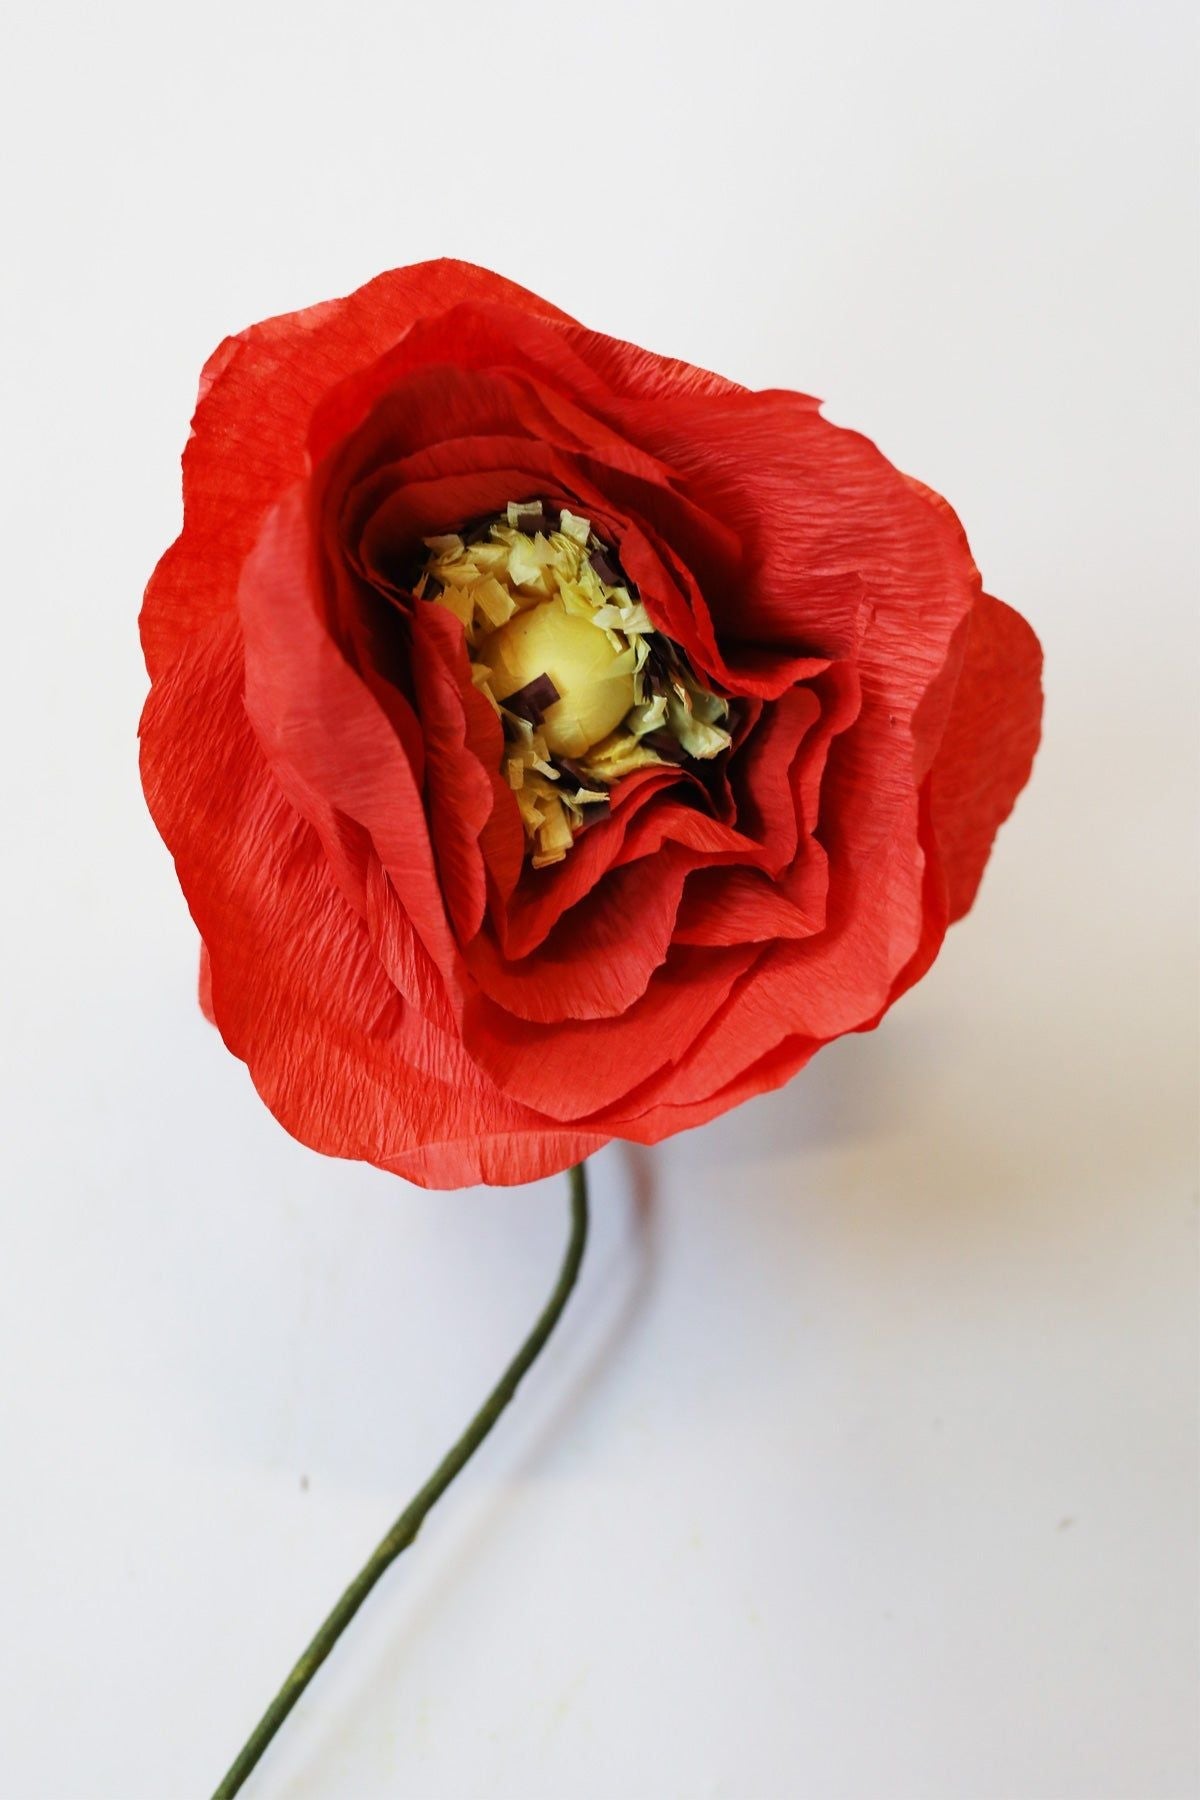 Estudio sobre papel Poppy de hielo de flor brillante, rojo